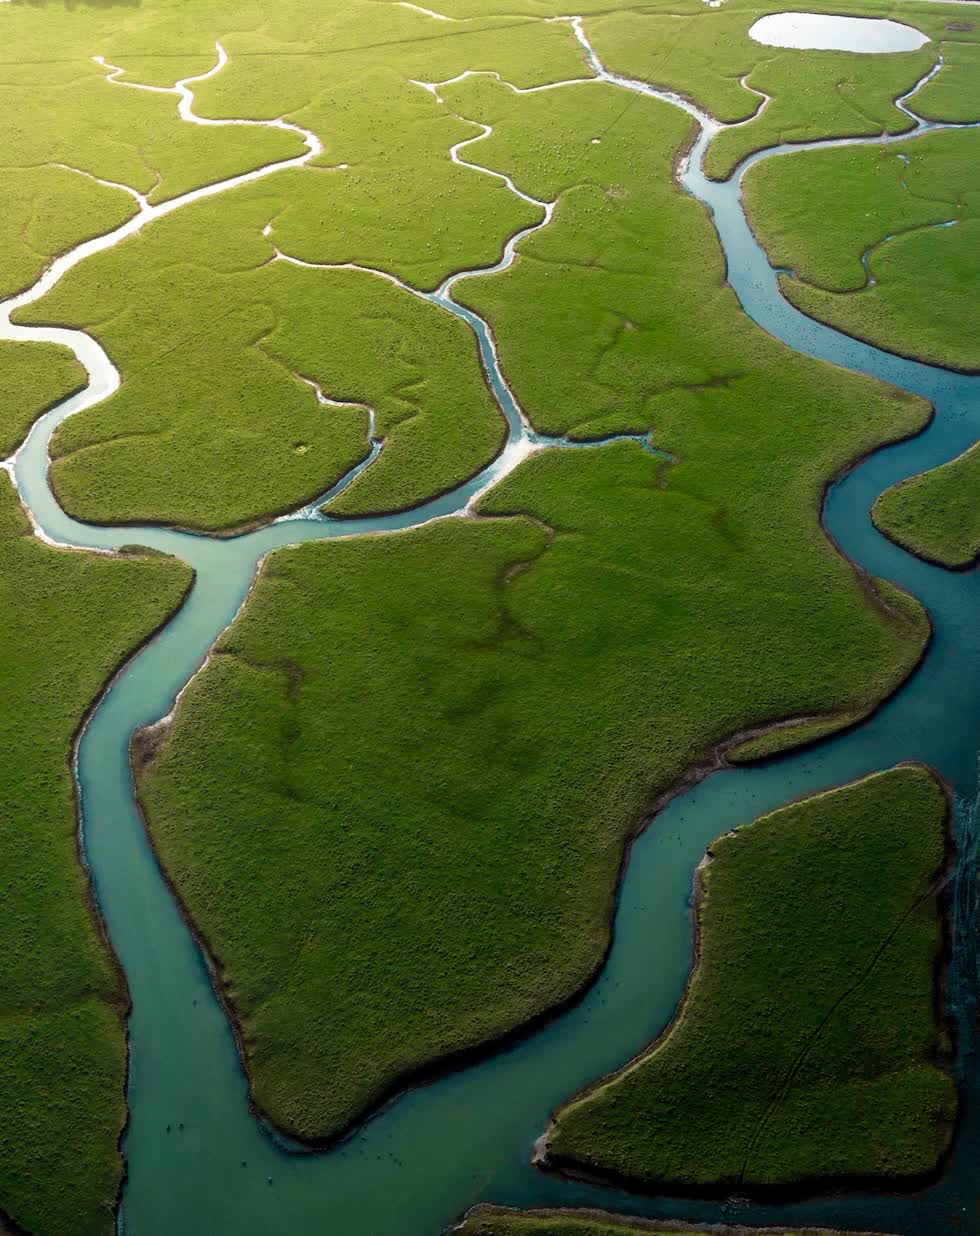   Một phần của khu rừng nhiệt đới lớn nhất thế giới  Amazon được chụp ở East Sussex, nơi dòng sông Cuckmere có sự chia tách giữa những trảng cỏ và dòng nước trong xanh. Ảnh: Hugo Healy.  